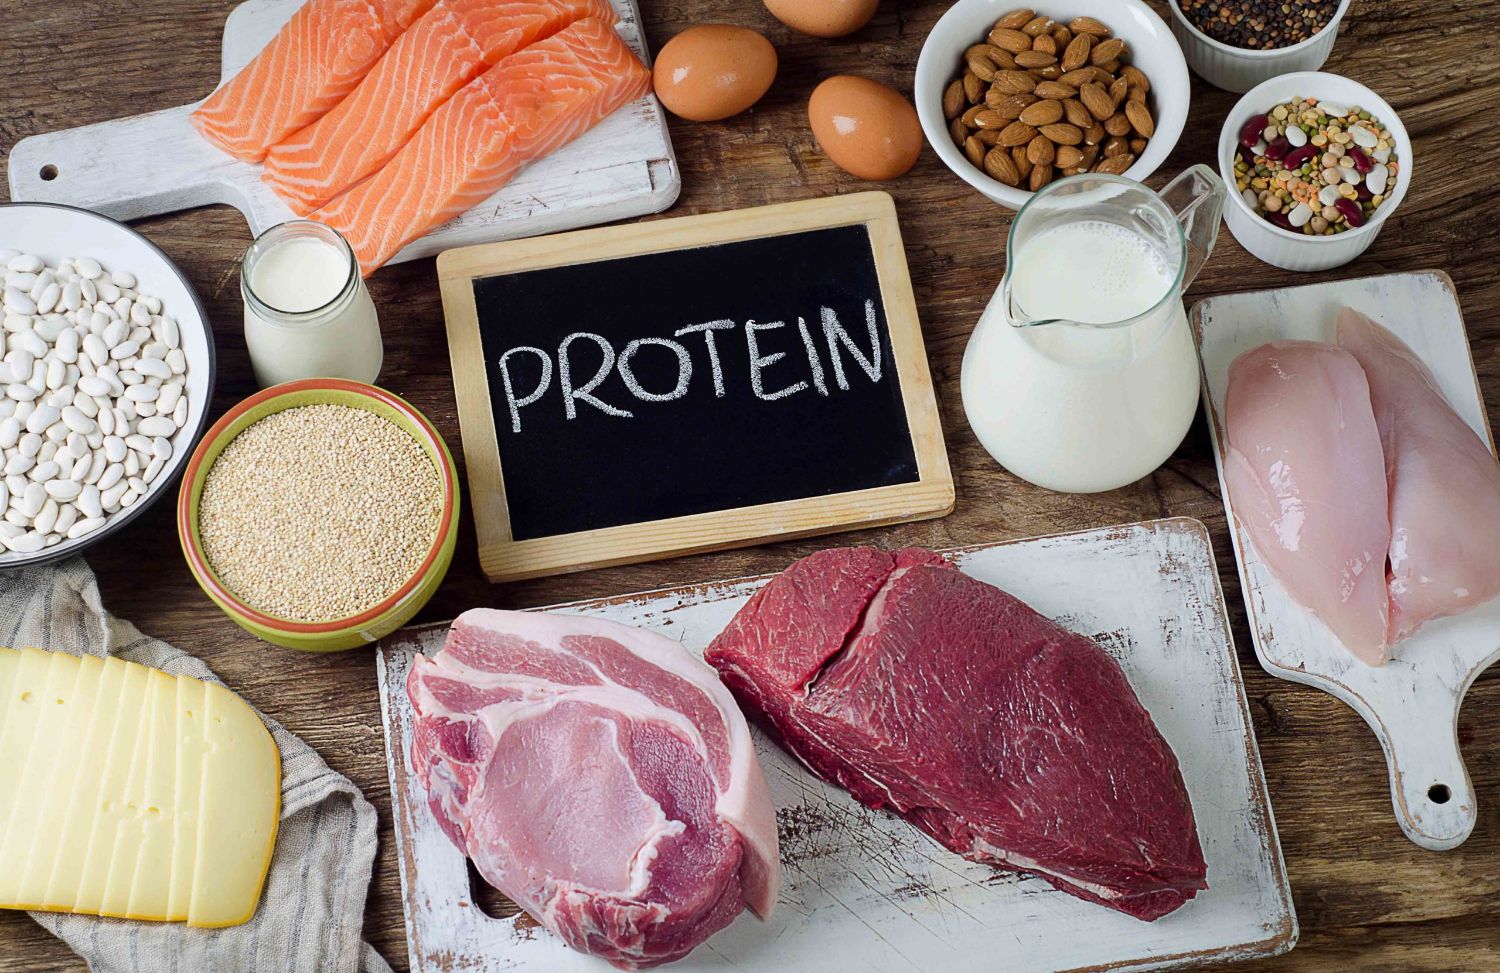 Ăn nhiều protein hơn sẽ chỉ tăng thêm được lượng carlo